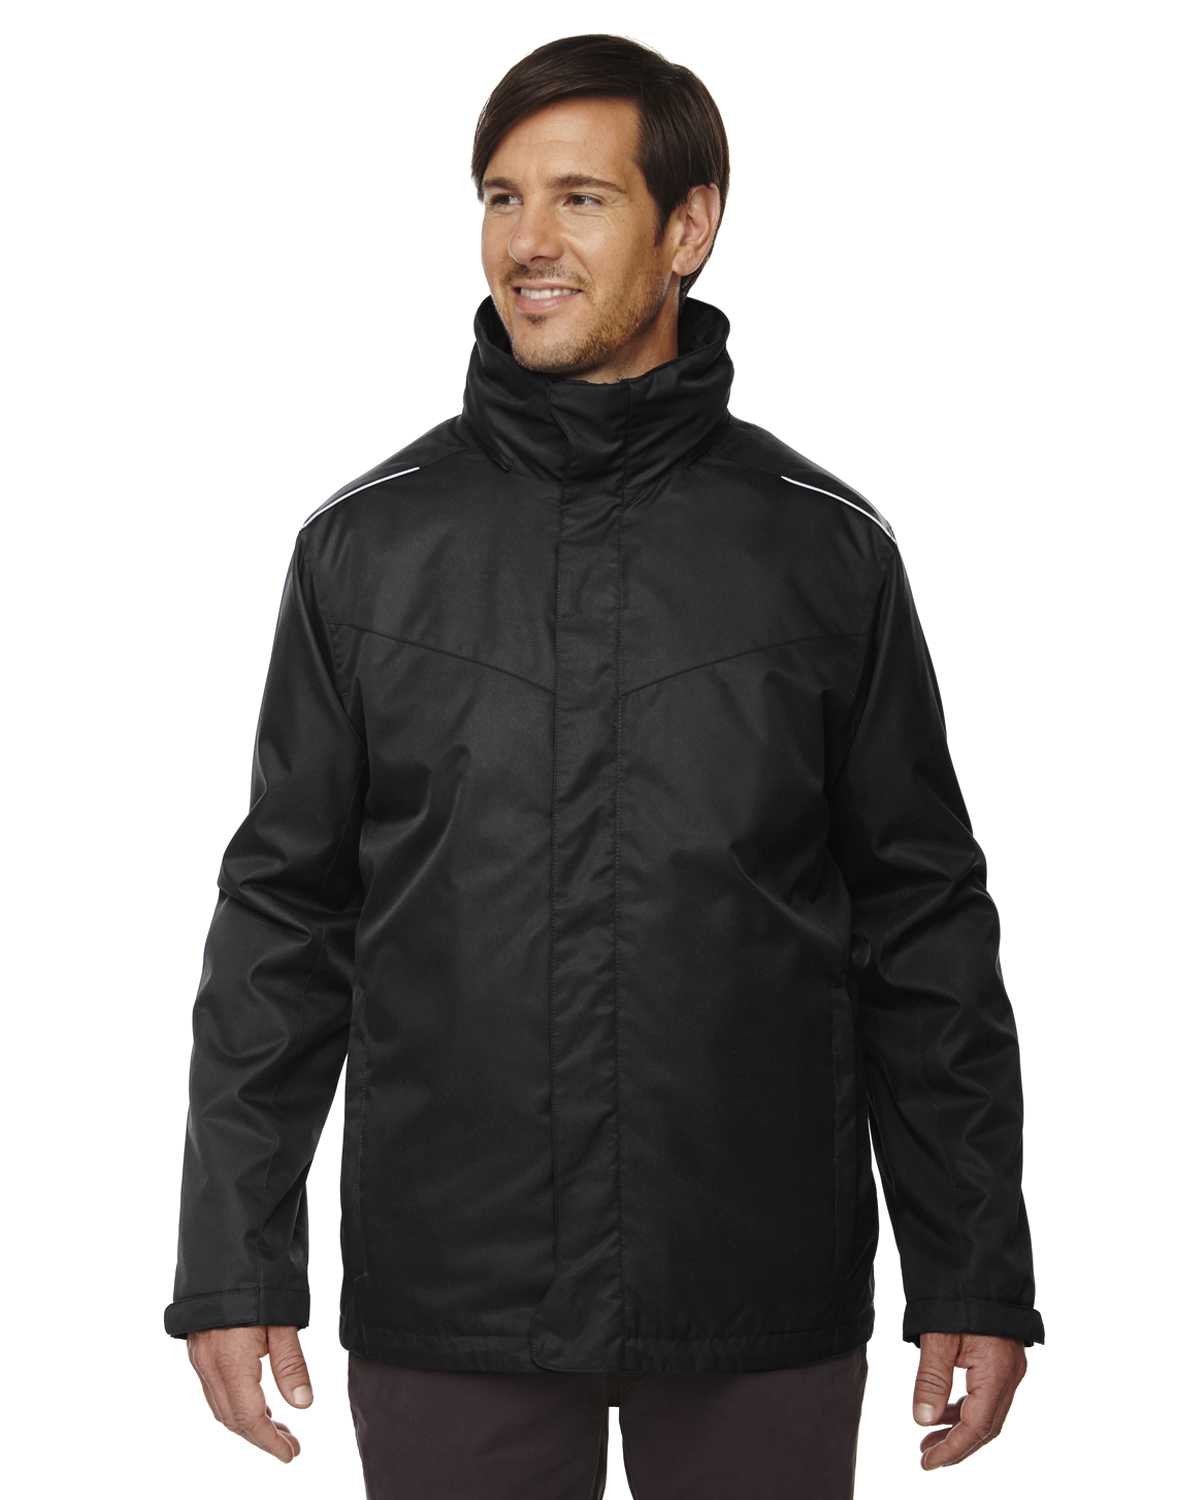 Core365 88205 Men's Region 3-in-1 Jacket with Fleece Liner ...